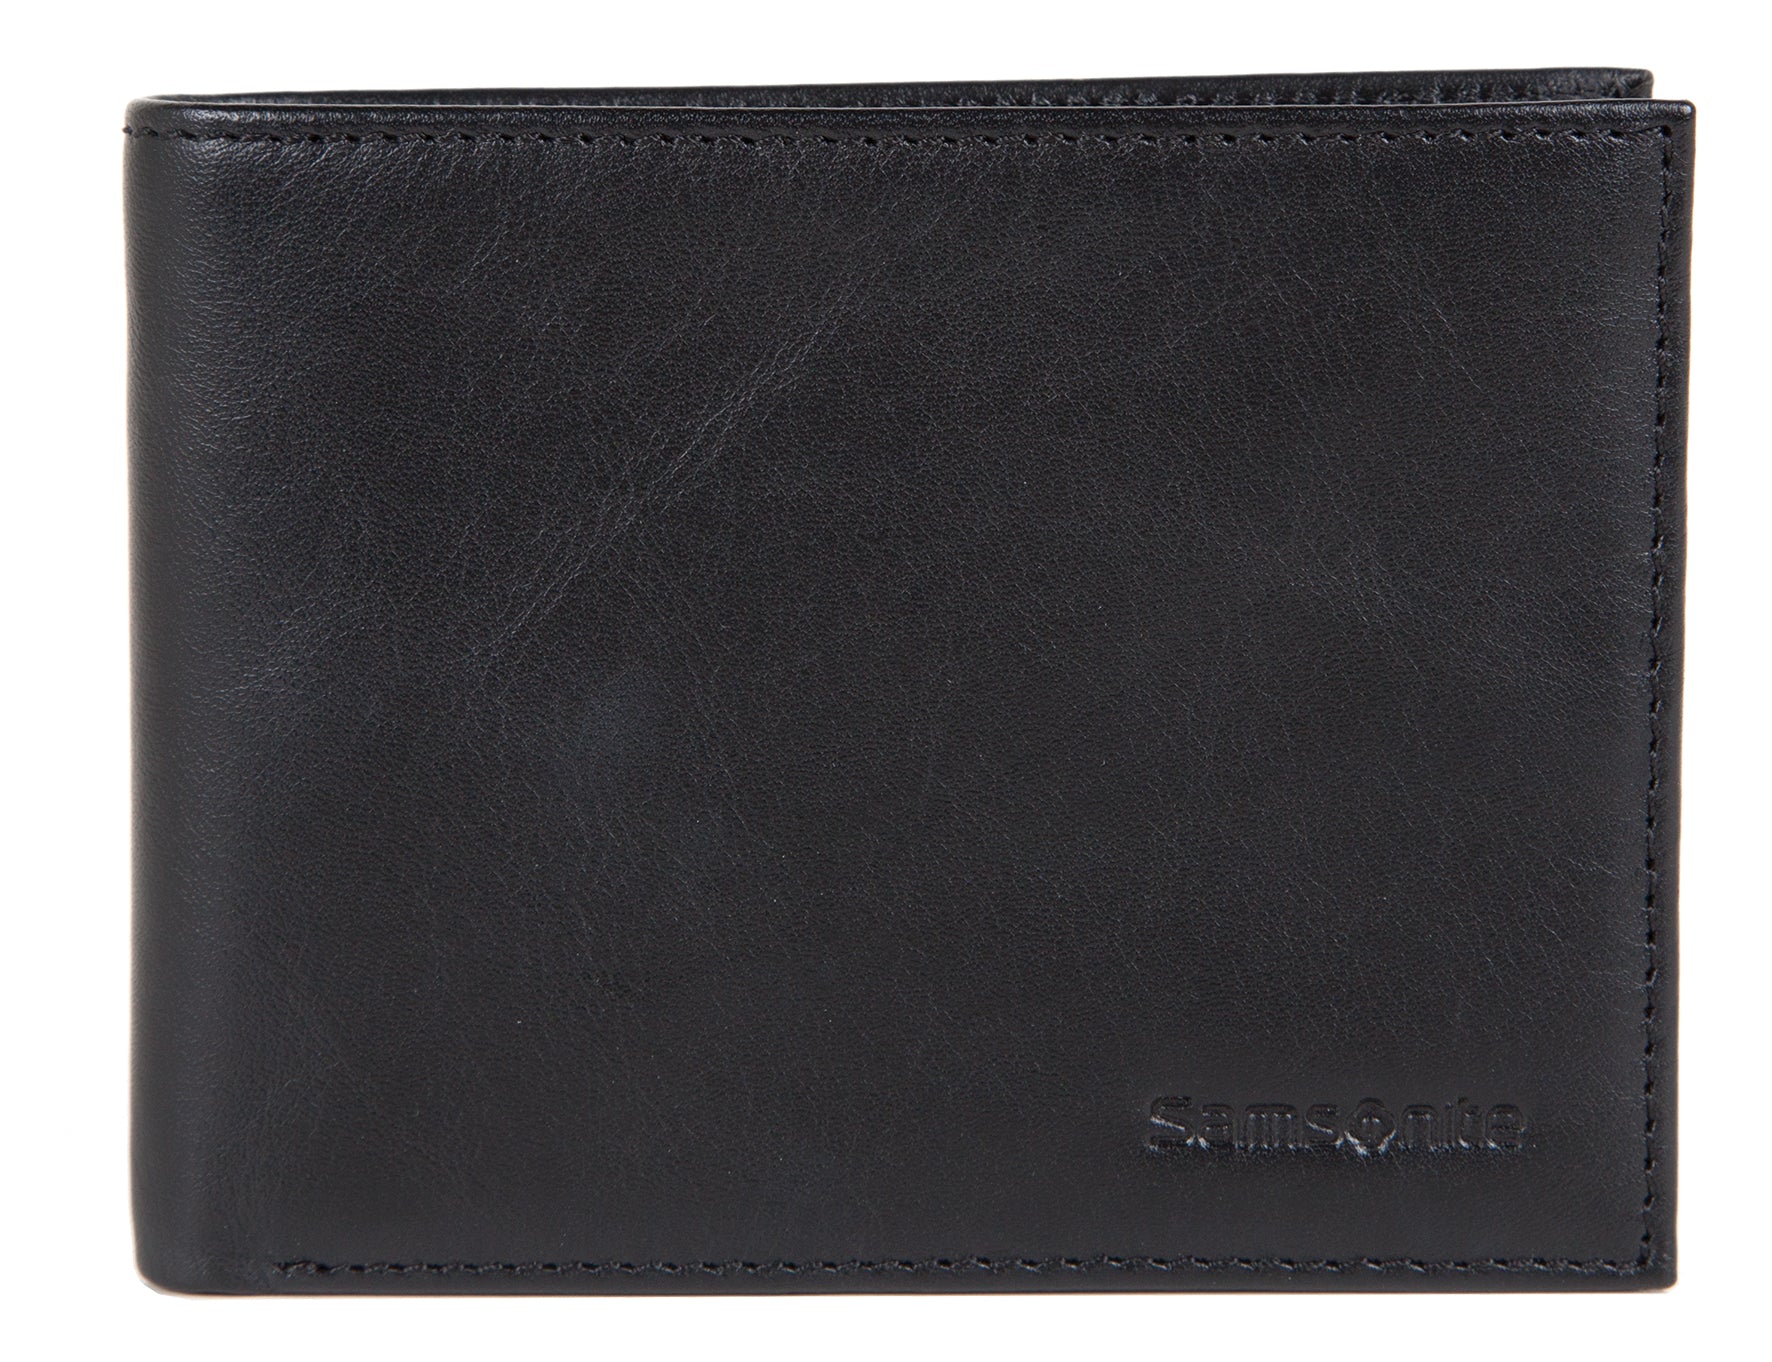 Samsonite - Leather Wallet - Black - rainbowbags